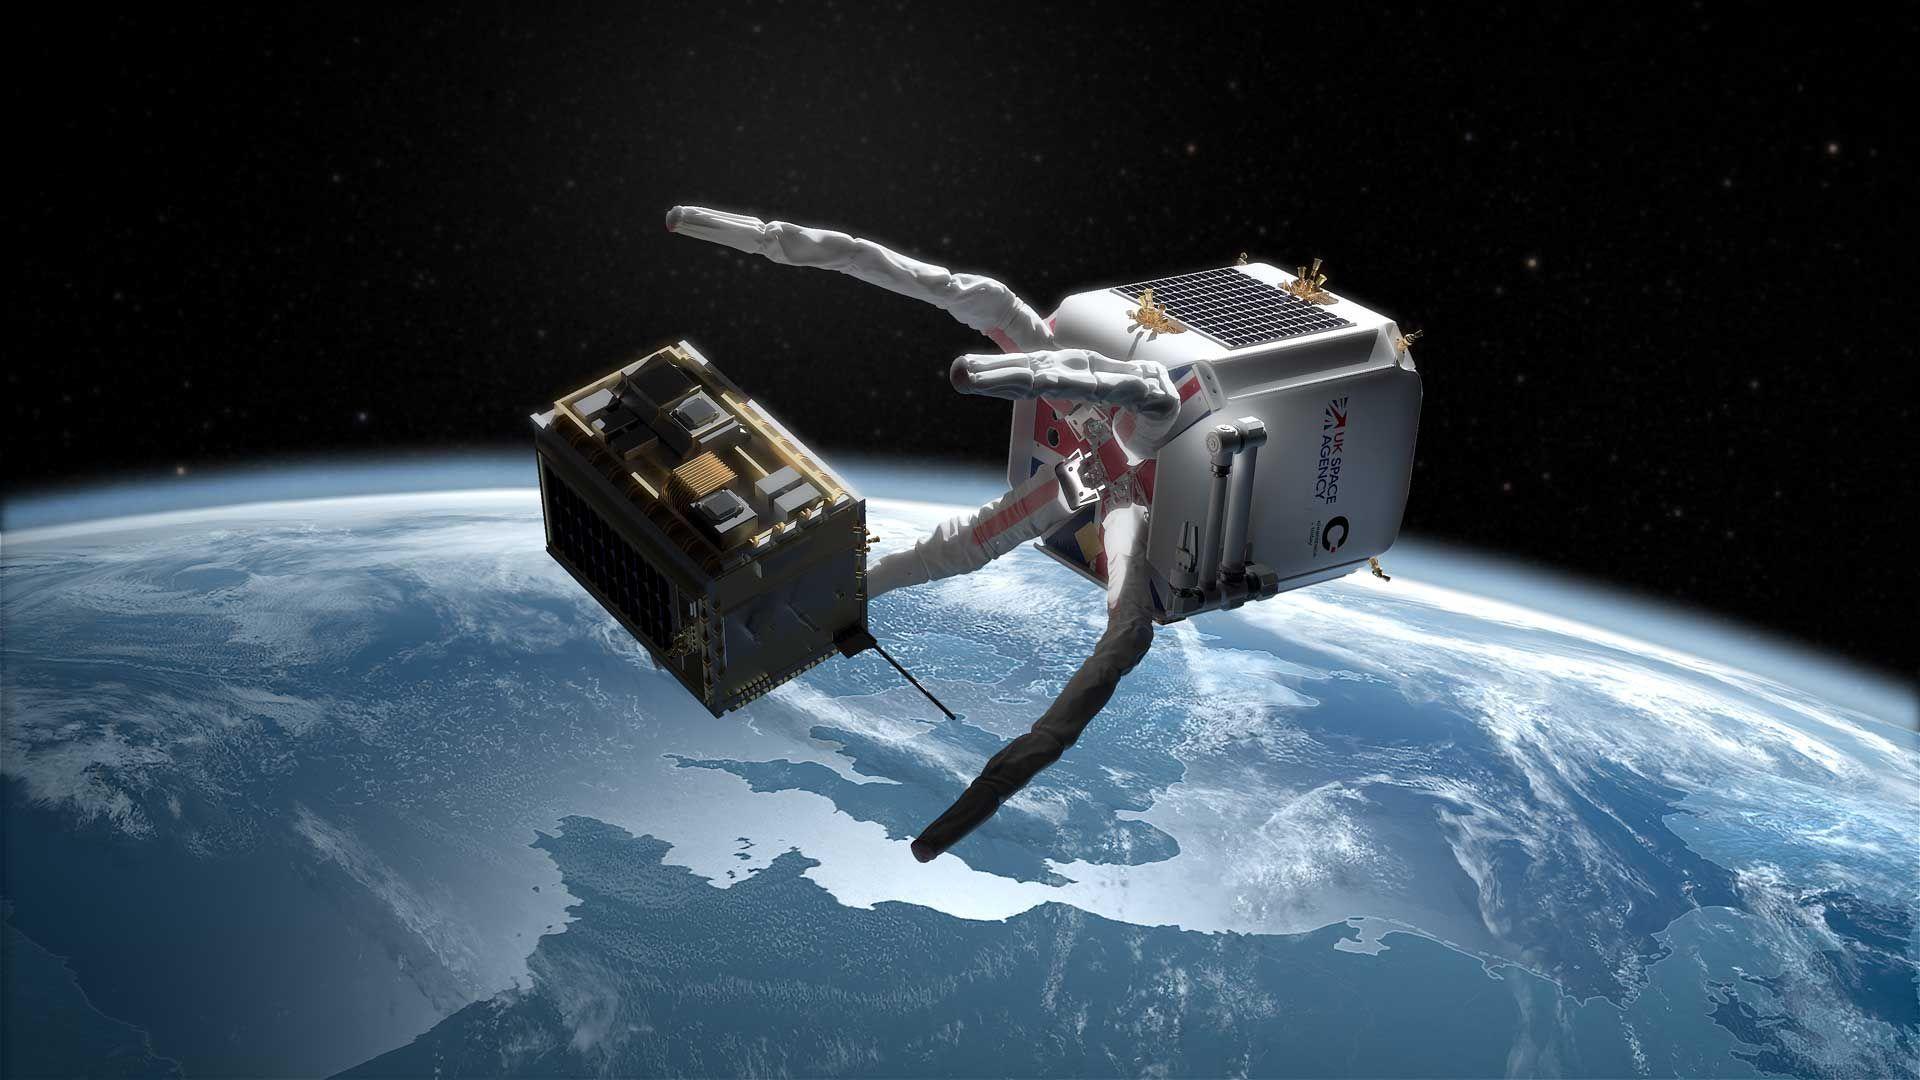 Critical hilft dabei inaktive Satelliten aus der Erdumlaufbahn zu entfernen